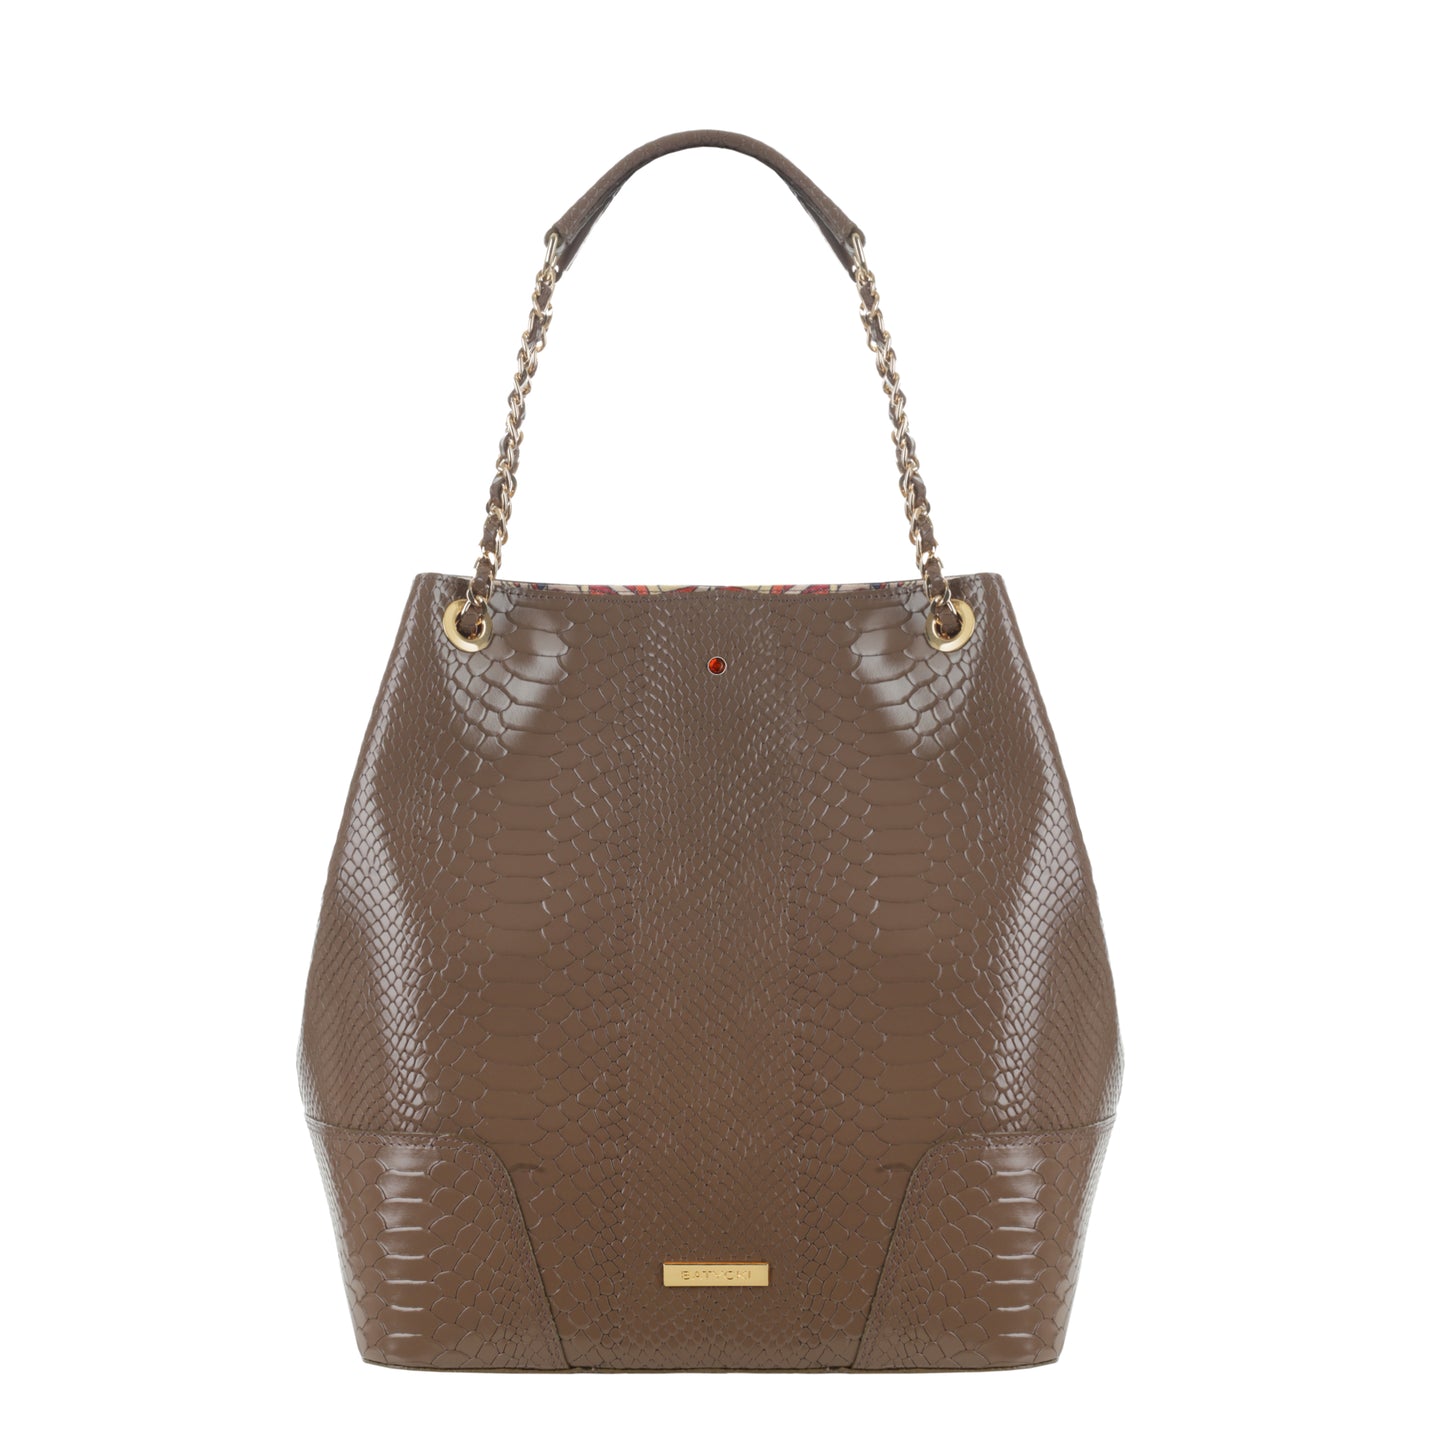 AMELIA MOCCA women's leather handbag